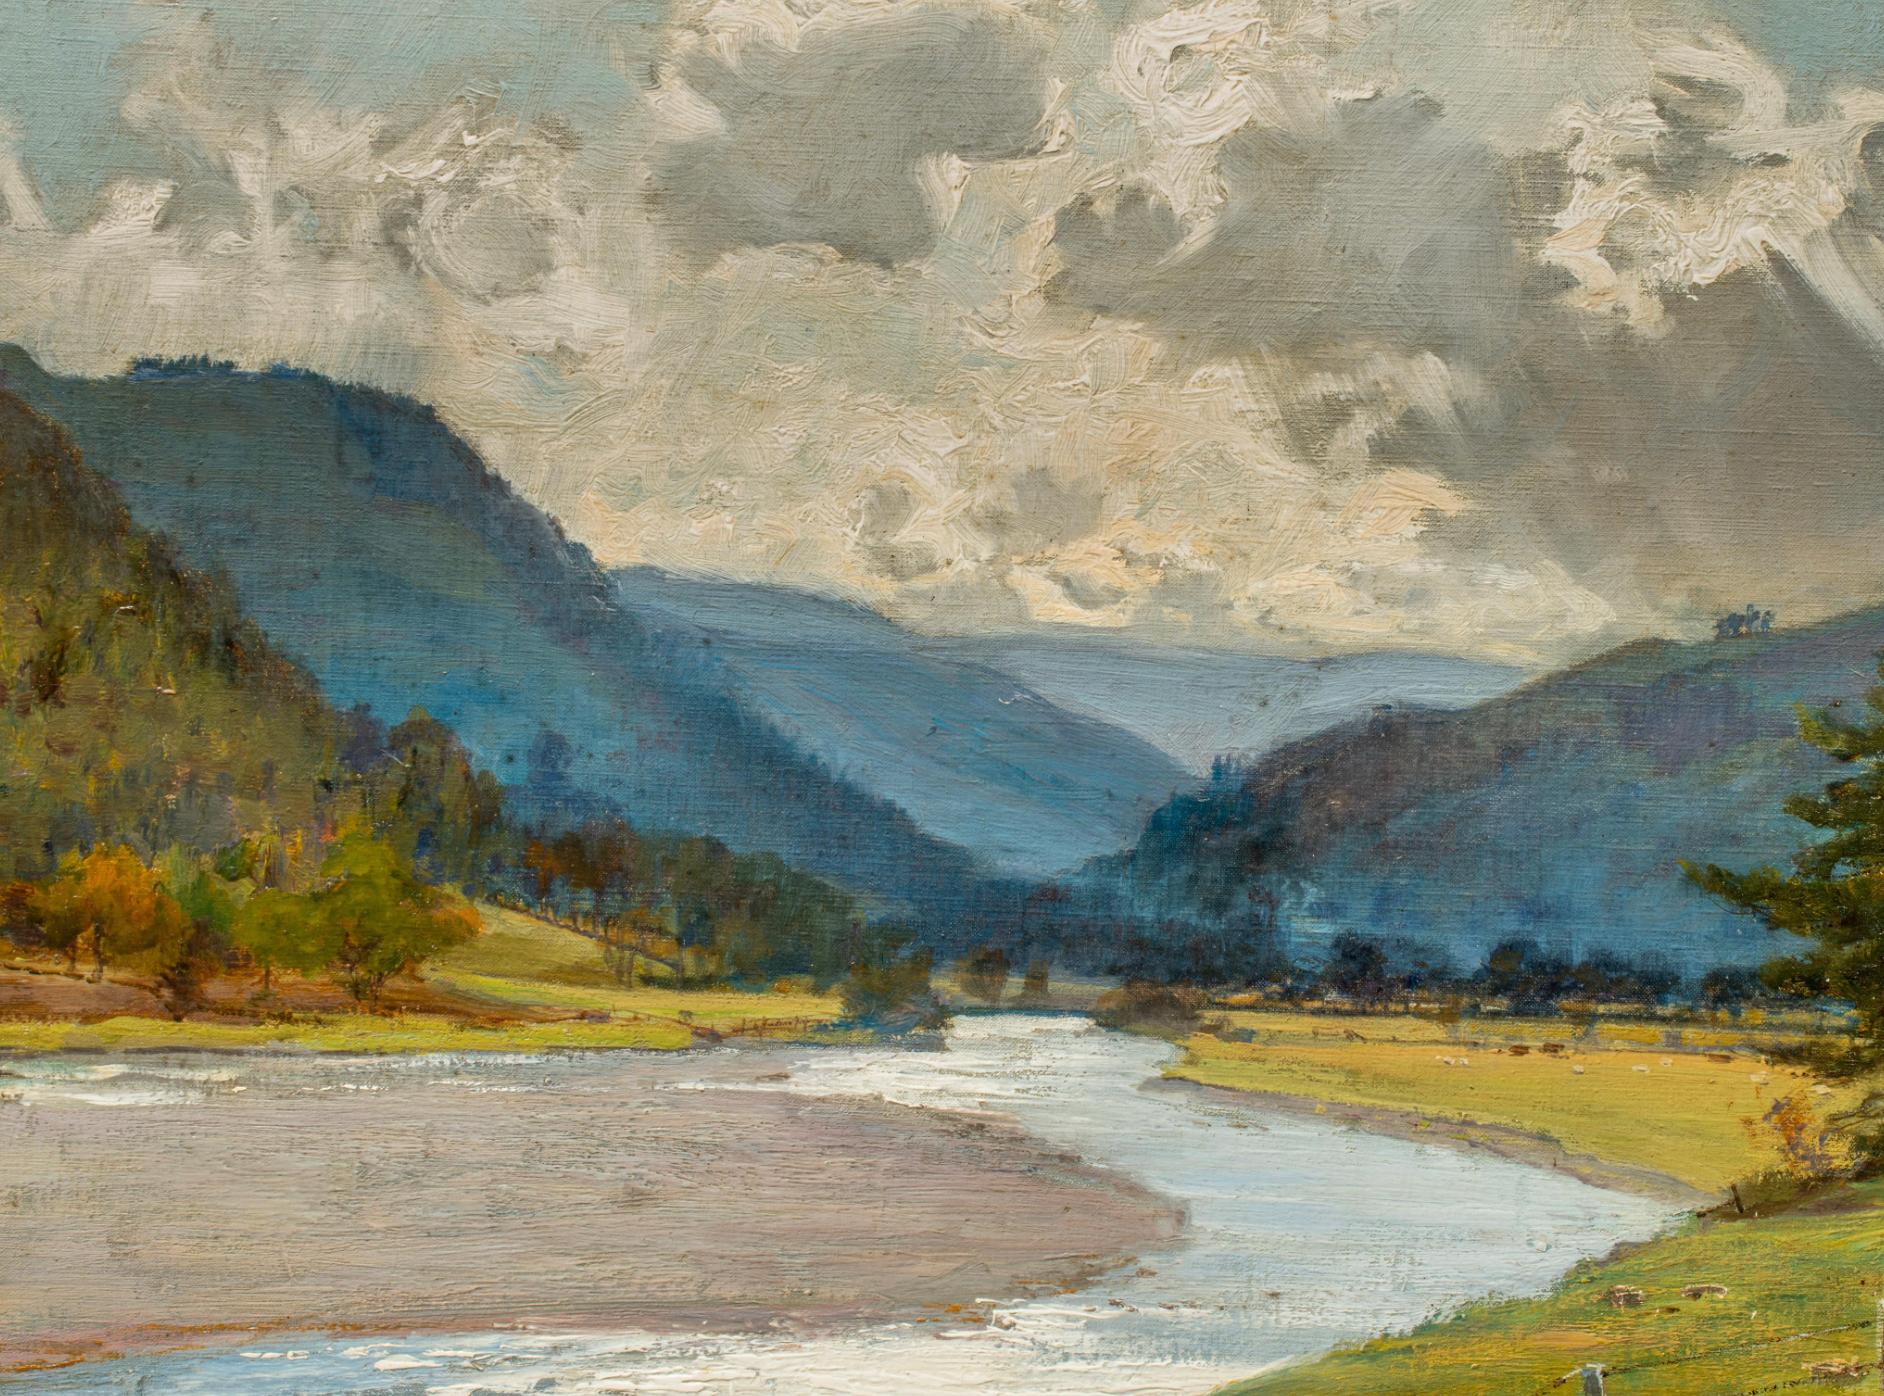 Moving the Flock, huile sur toile paysage des Highlands écossais, signée  - Moderne Painting par Alfred East